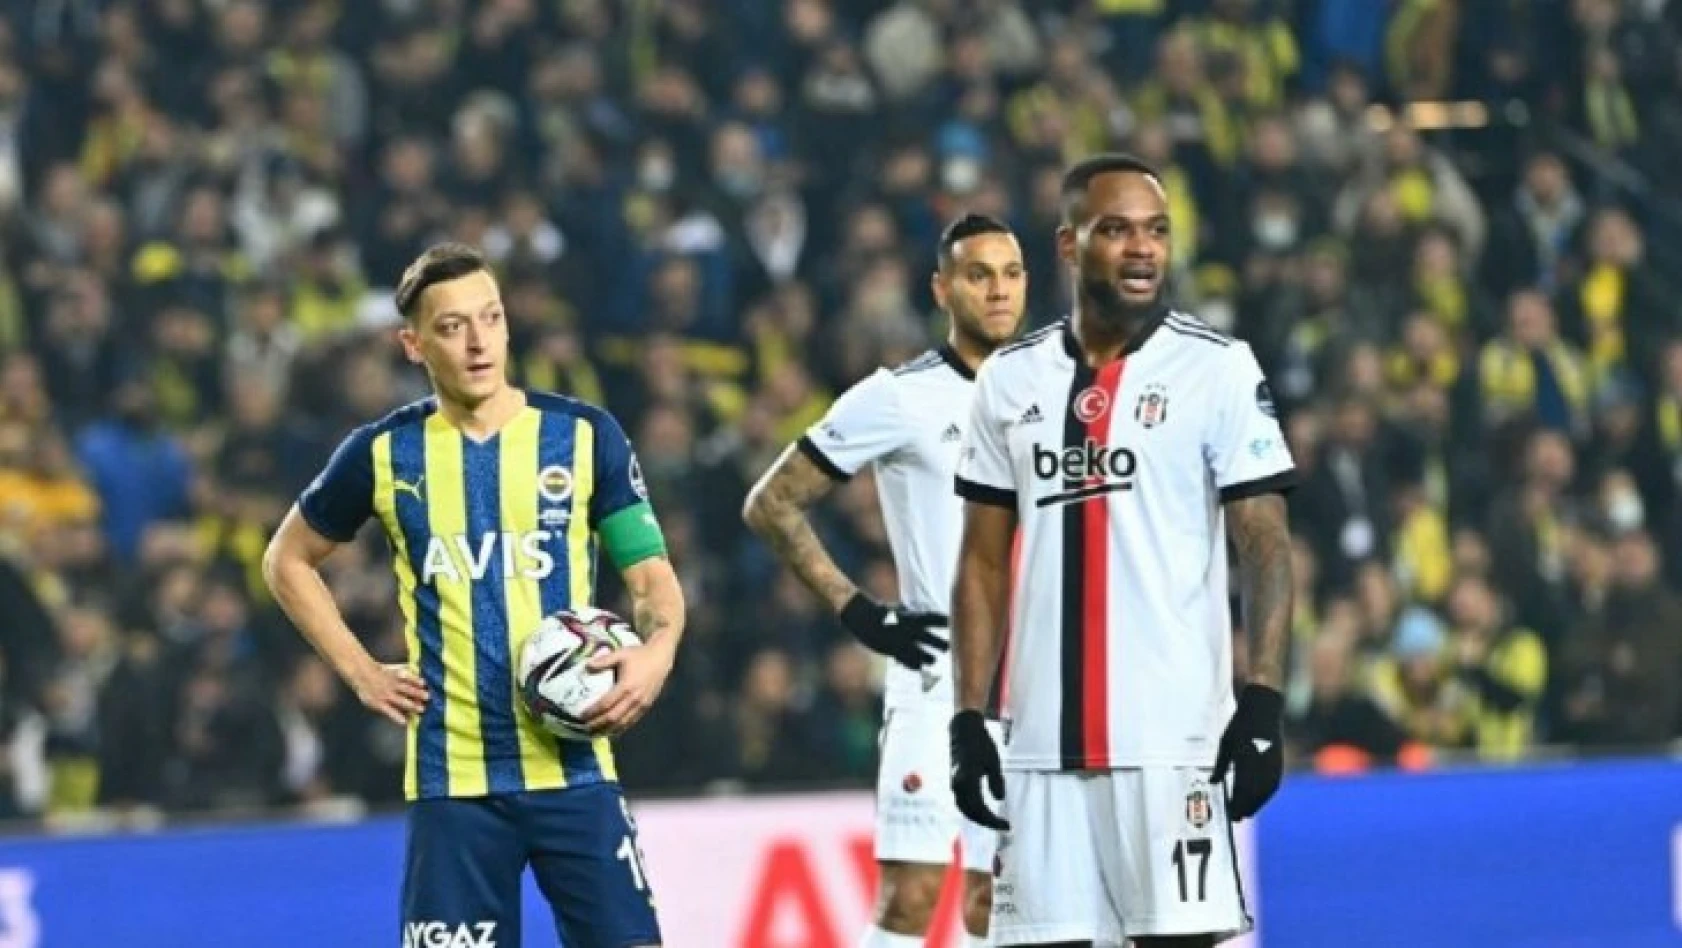 Fenerbahçe-Beşiktaş derbisinde kazanan çıkmadı! 4 gollü maçta zirveyle fark açıldı!